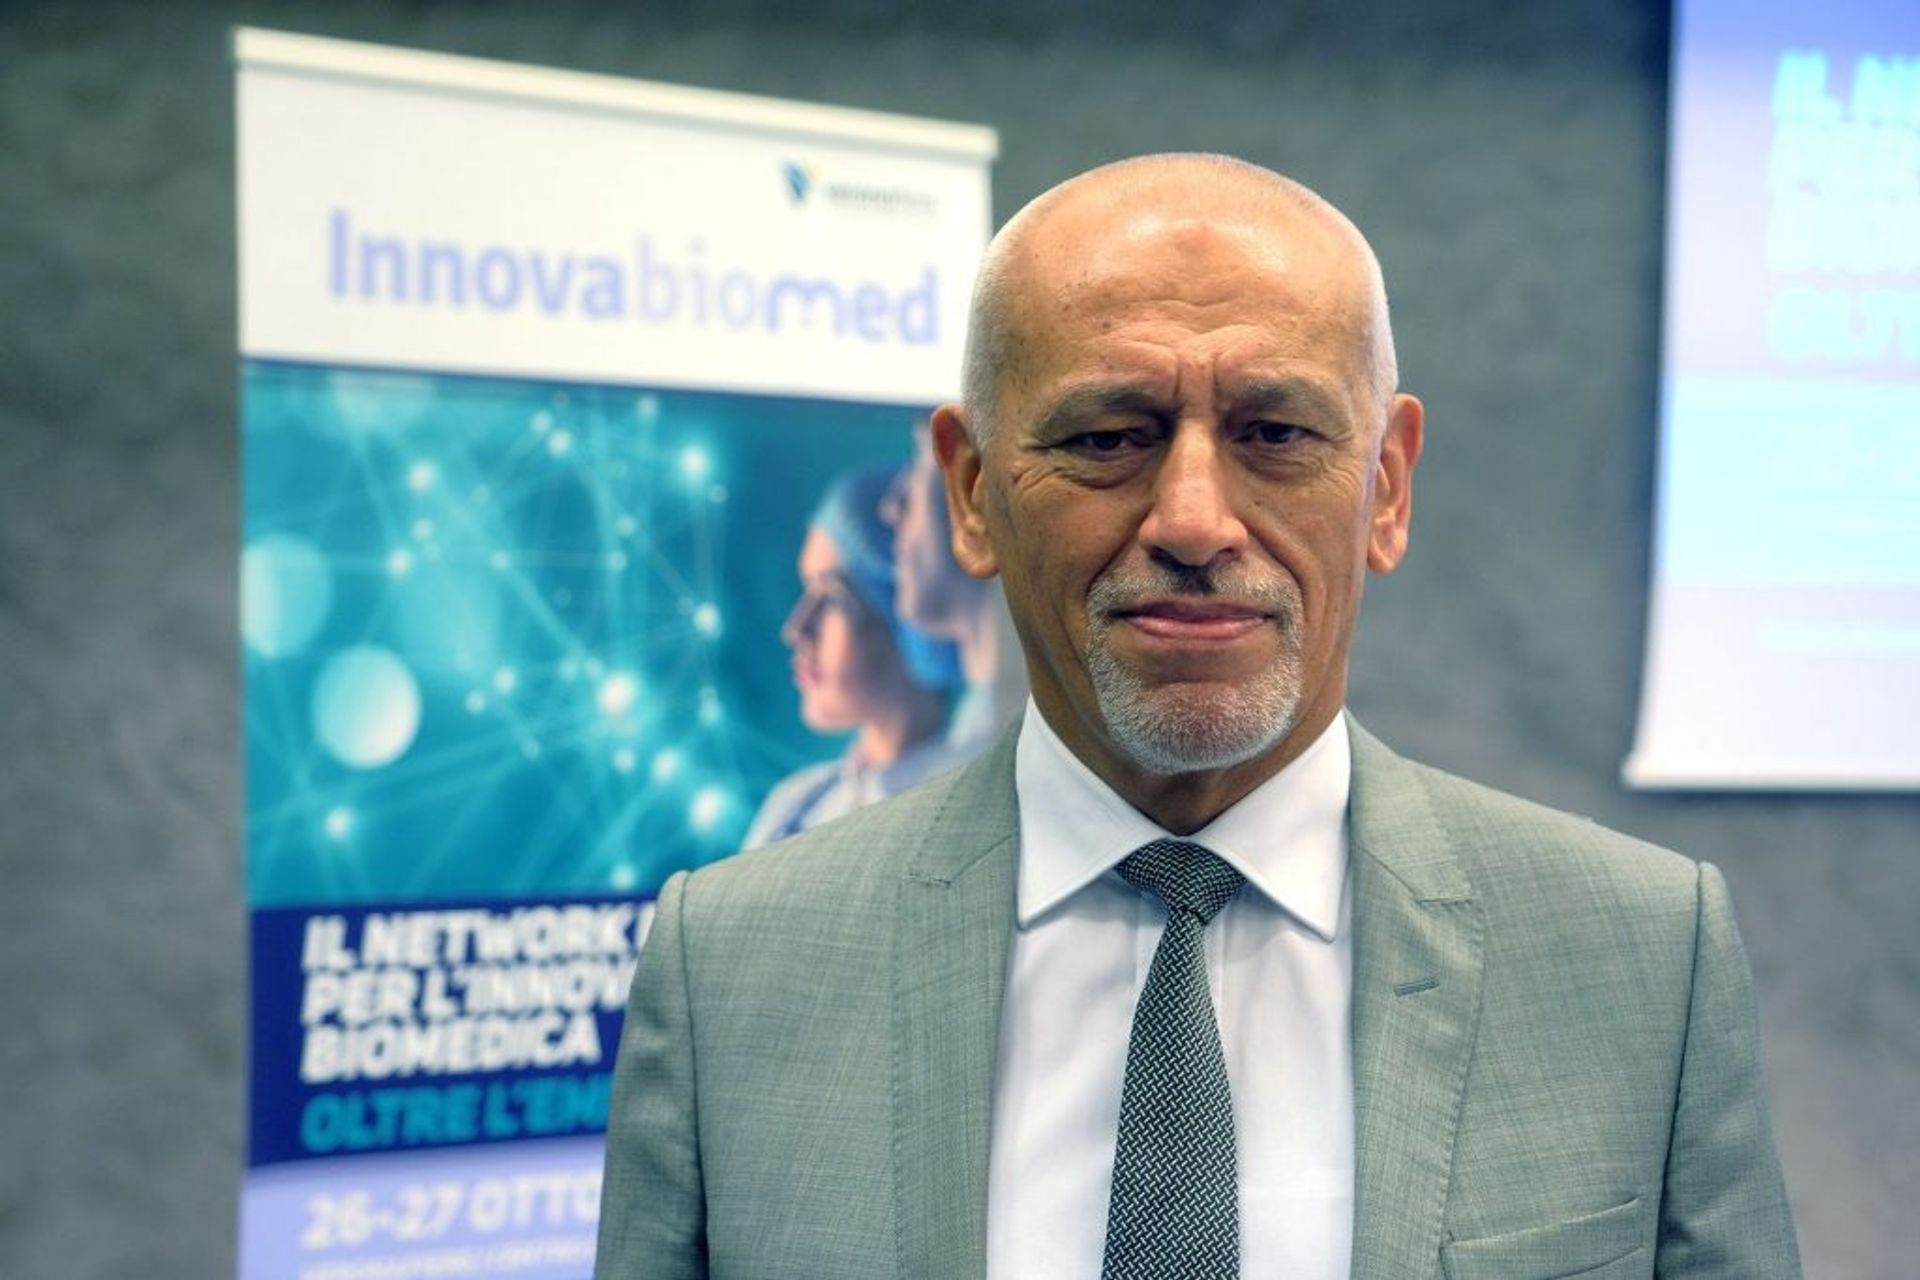 Alberto Nicolini è co-organizzatore dell’evento "Innovabiomed" a Verona ed editore del portale distrettobiomedicale.it